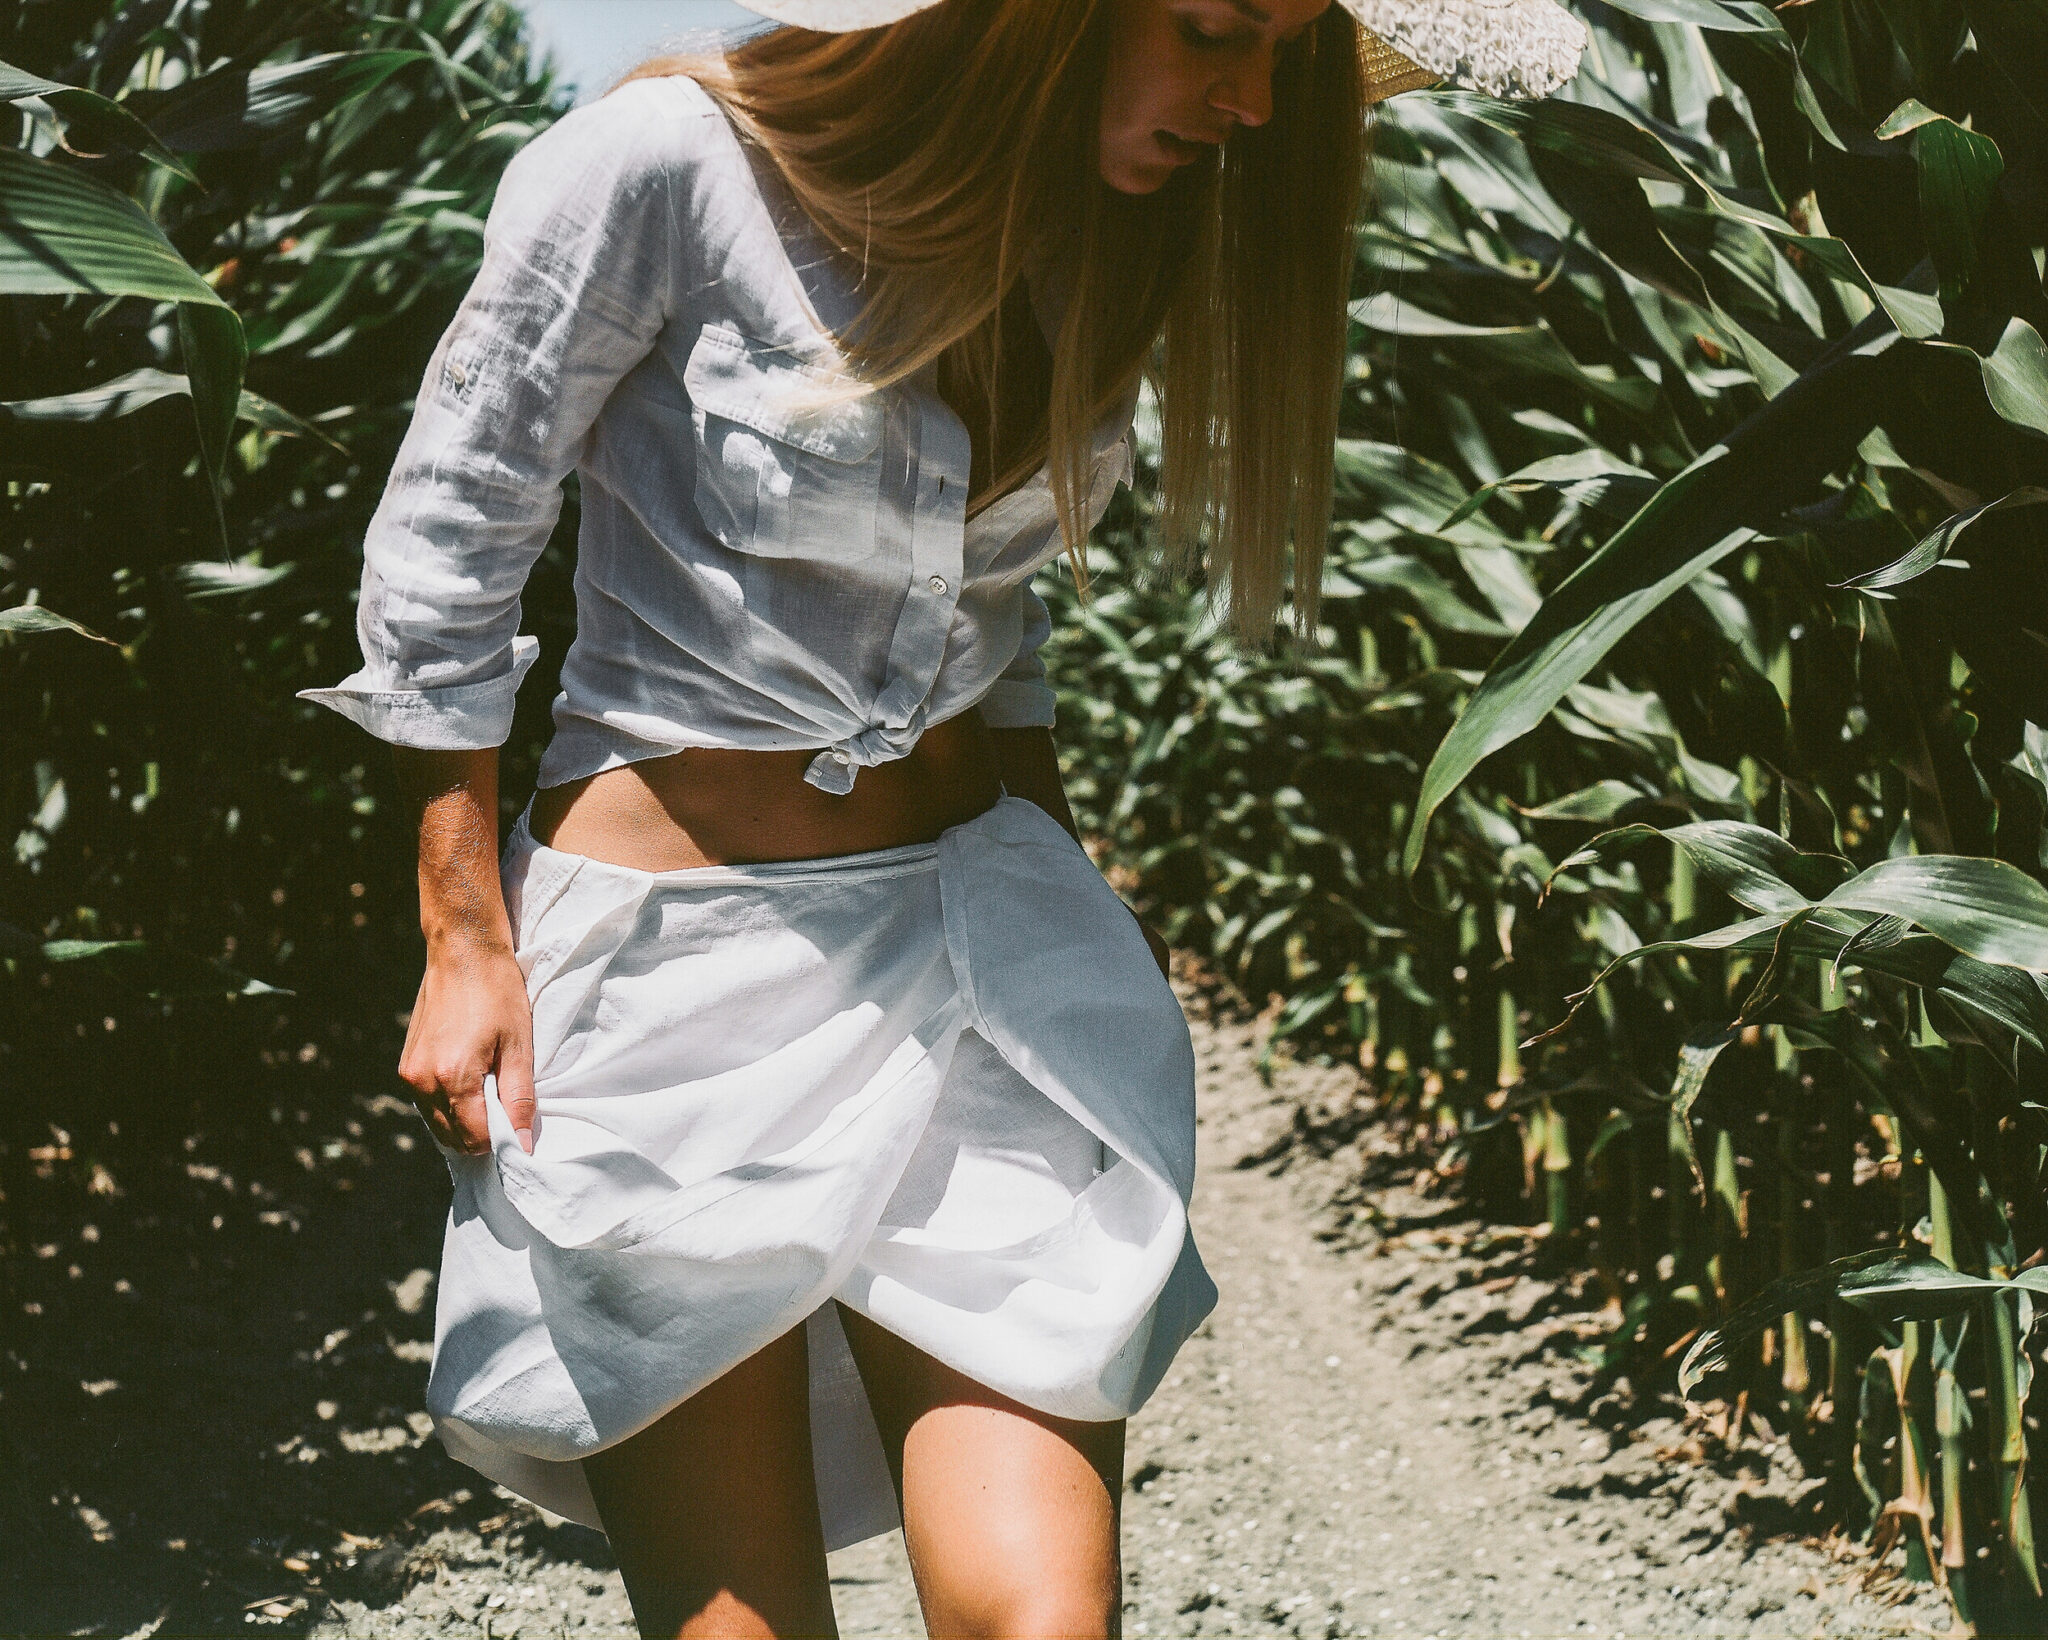 Modella con camicia bianca annodata e gonna raccolta in mezzo a un campo di pannocchie, fotografia analogica con Mamiya RZ67